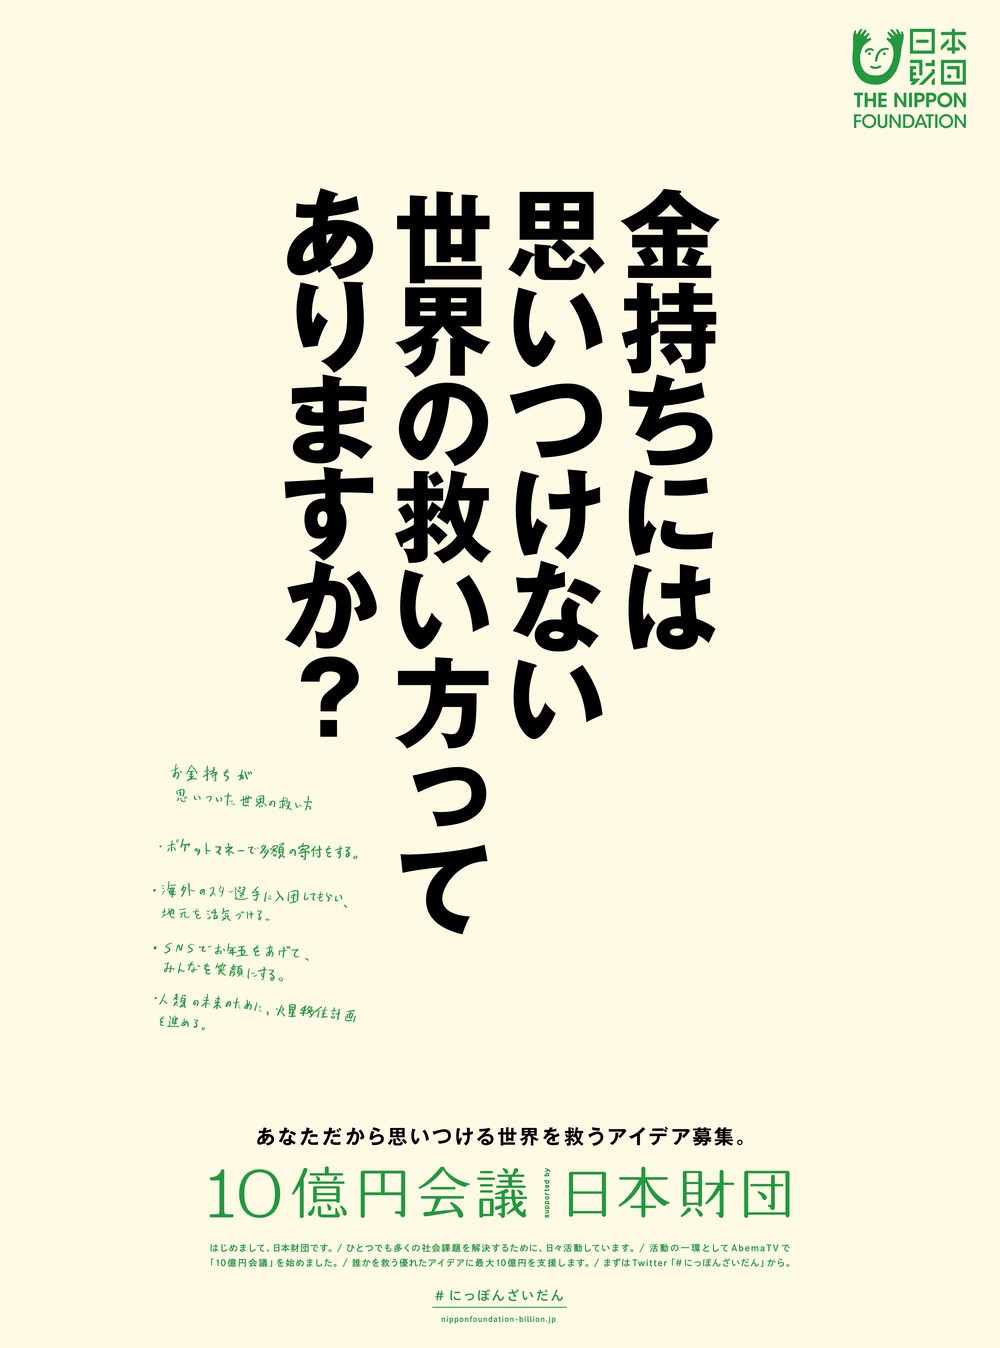 日本経済新聞朝刊に掲載された日本財団のキャンペーン広告
